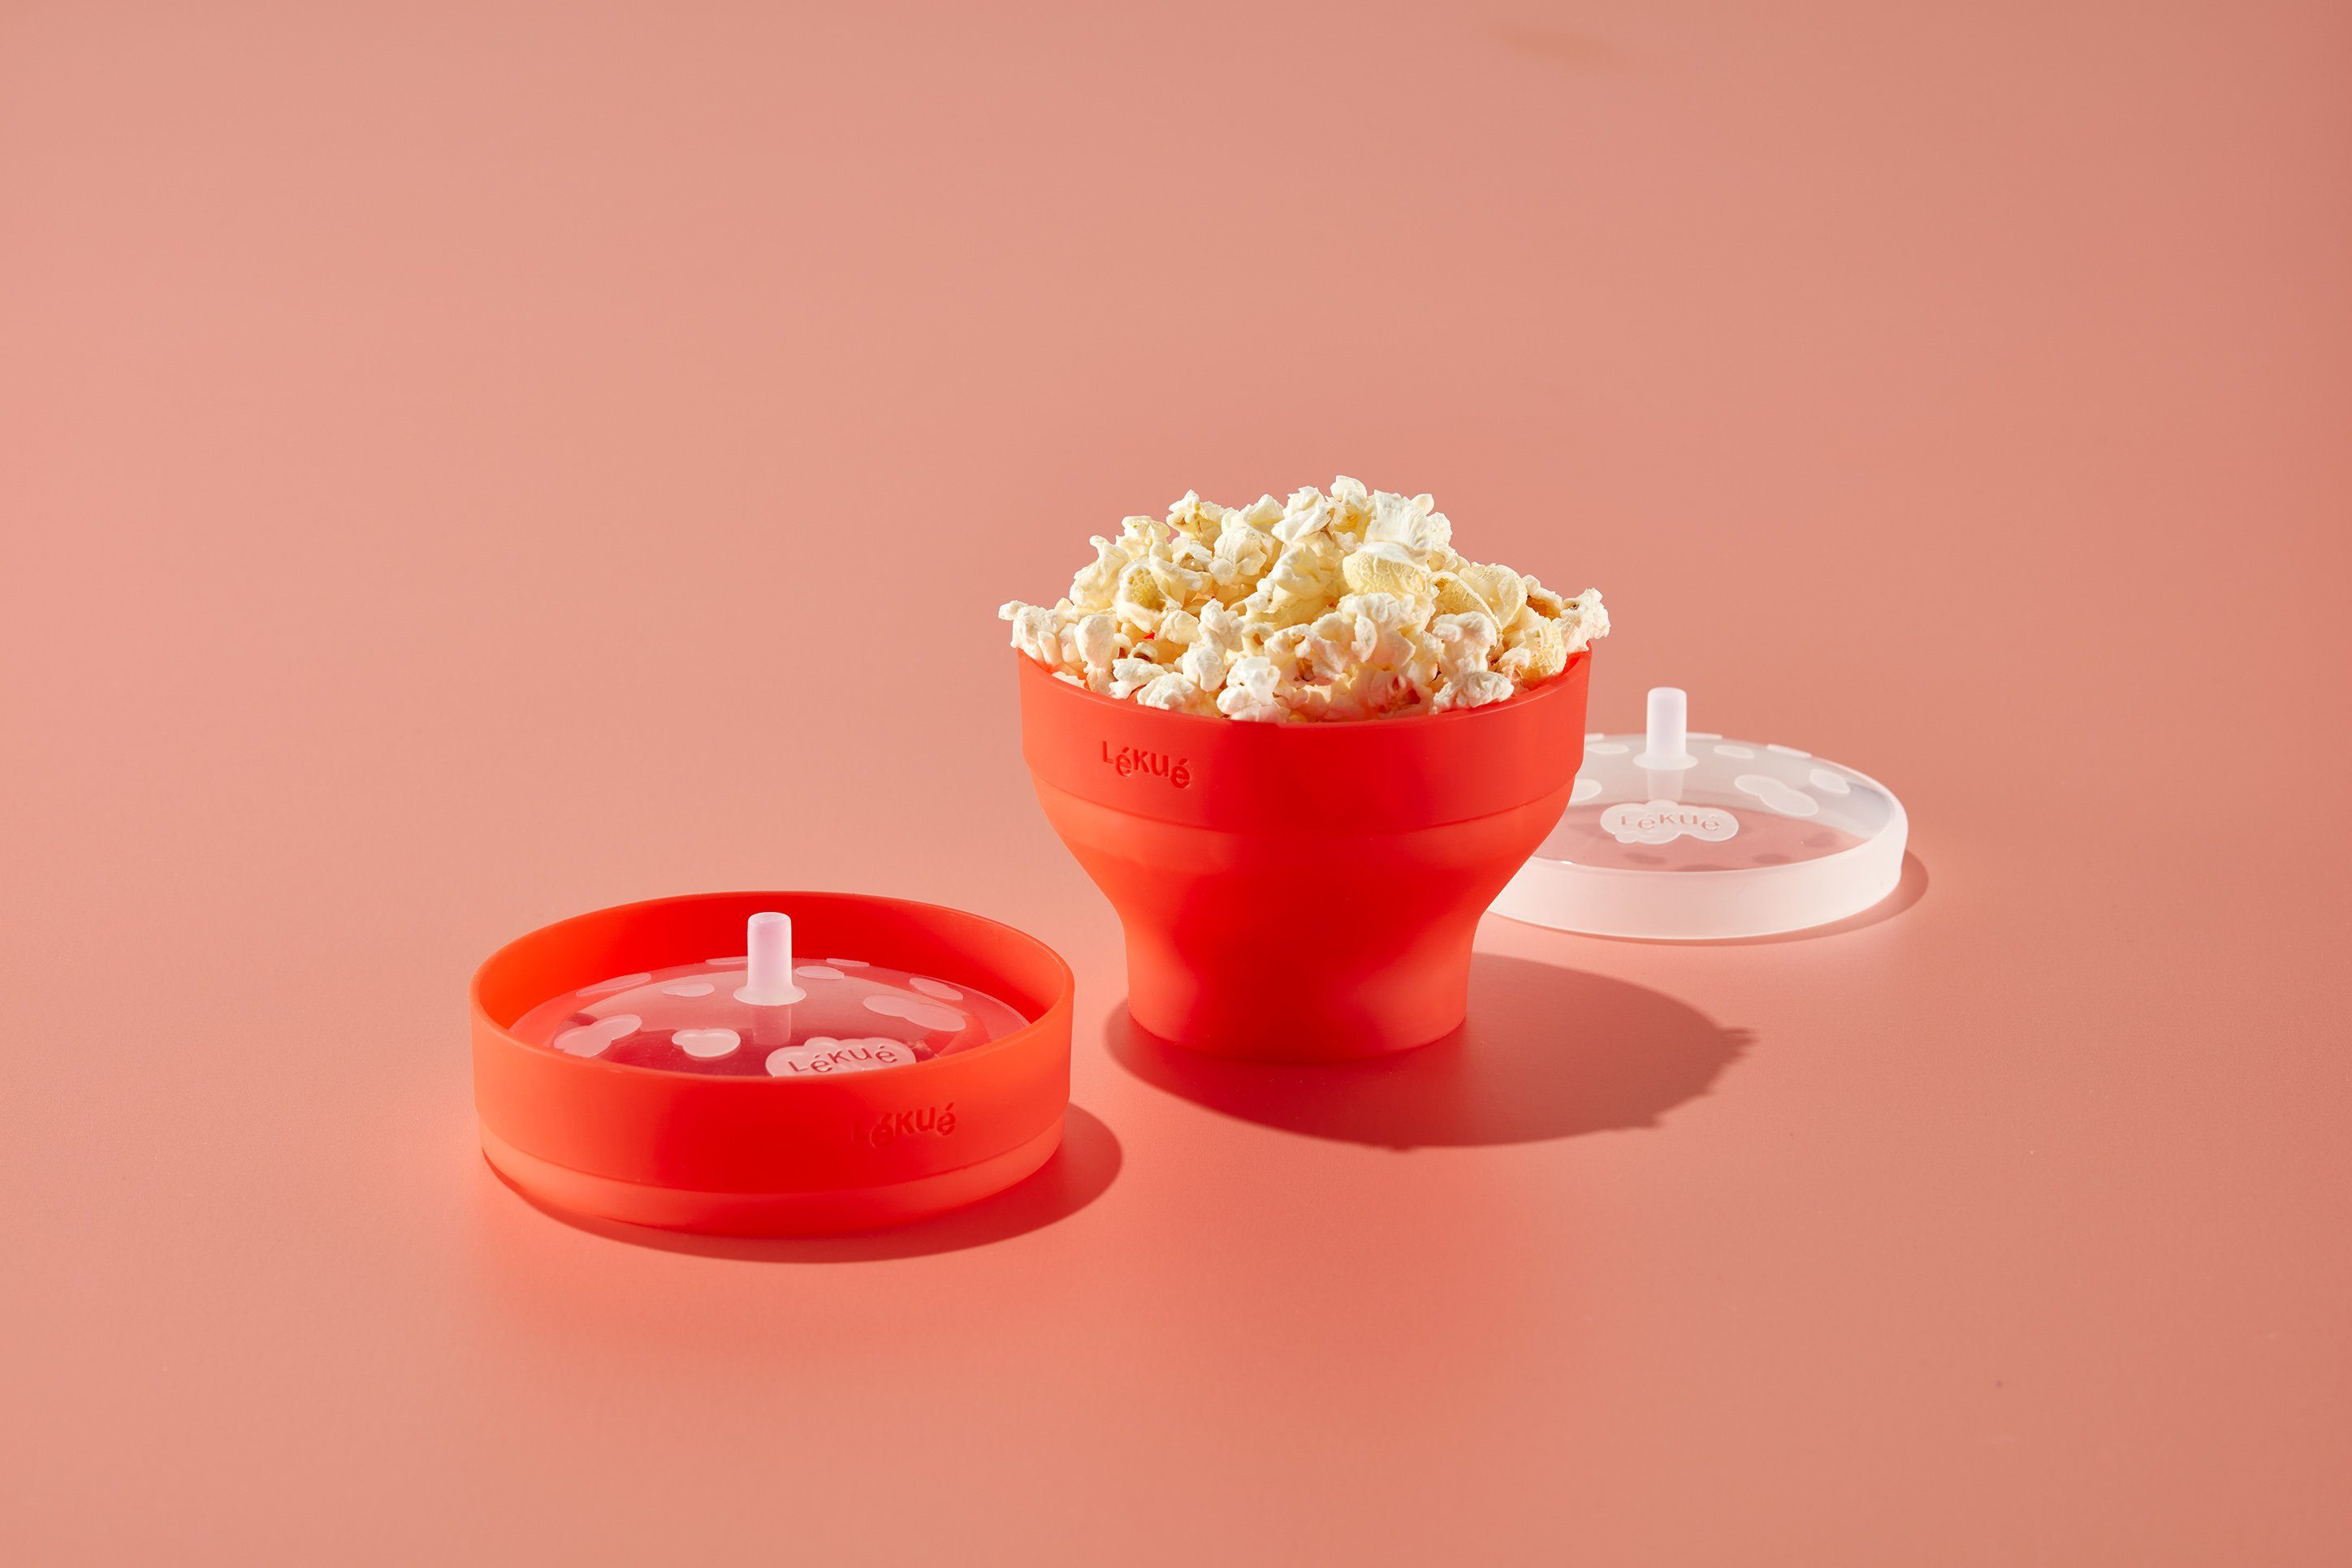 Popcornmaschine Mini LEKUE Maker Popcorn